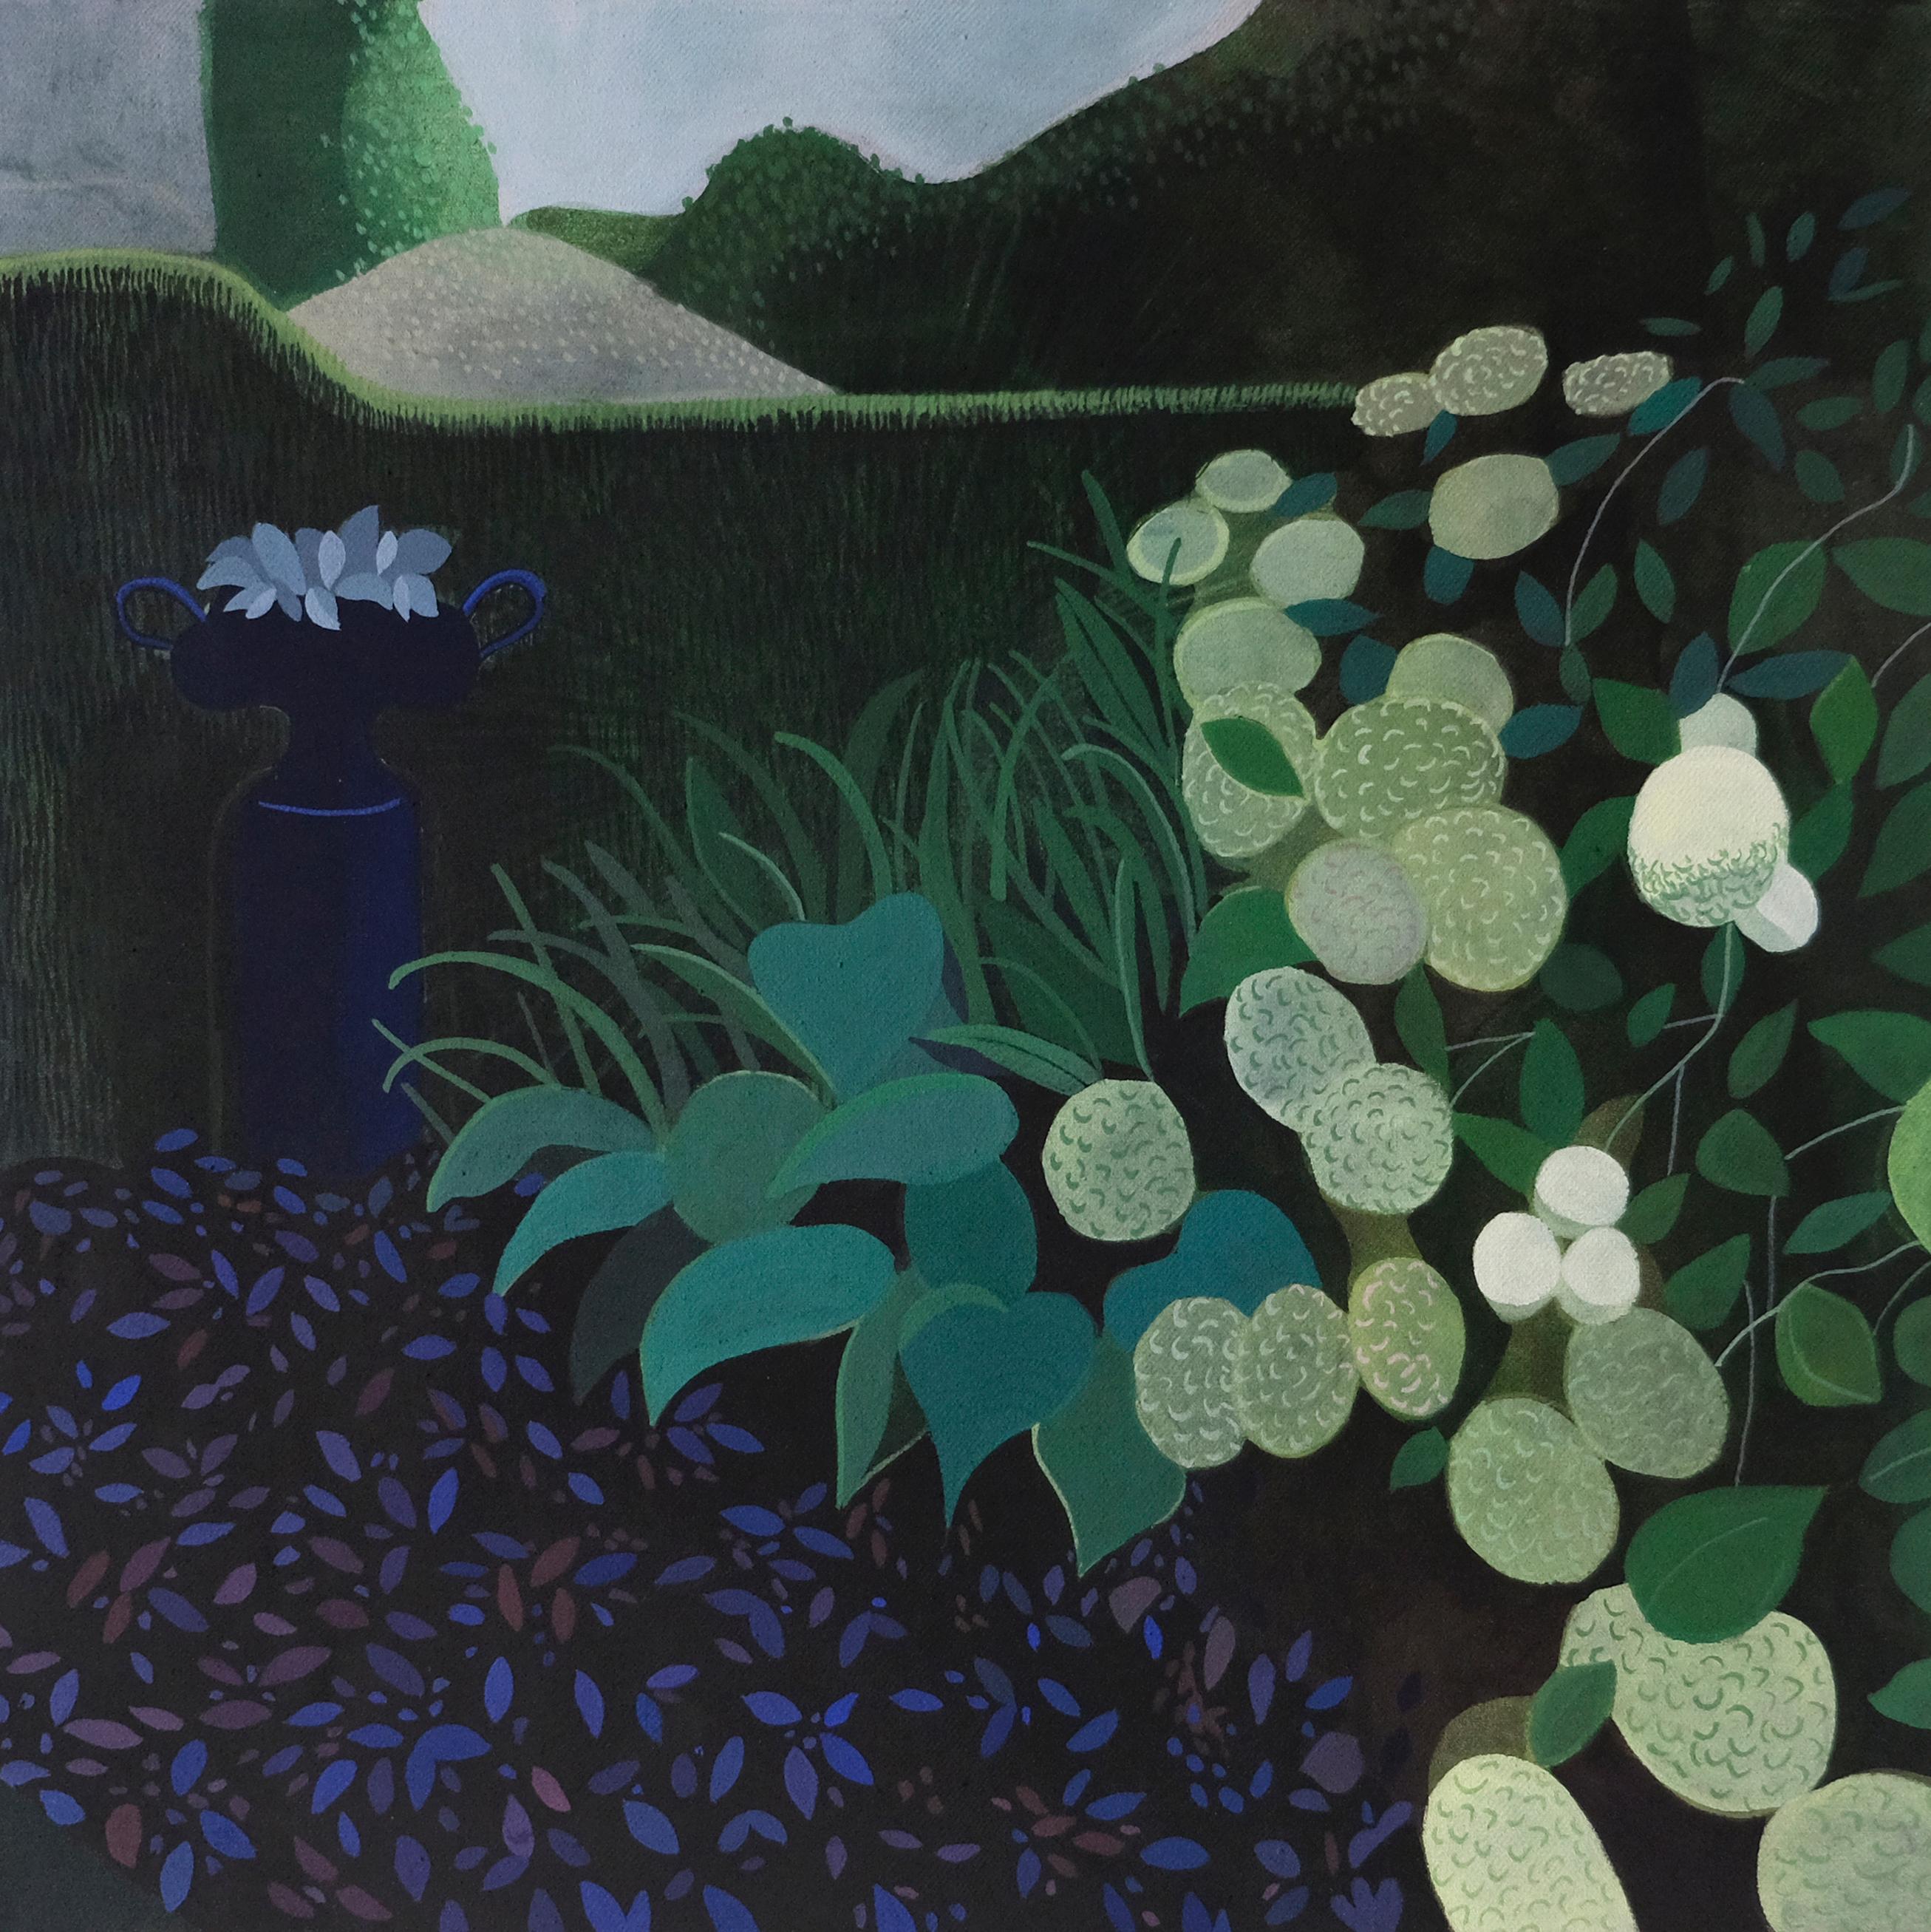 Untitled (Zeitgenössische Serie) - Landschaftsmalerei, minimalistische Malerei